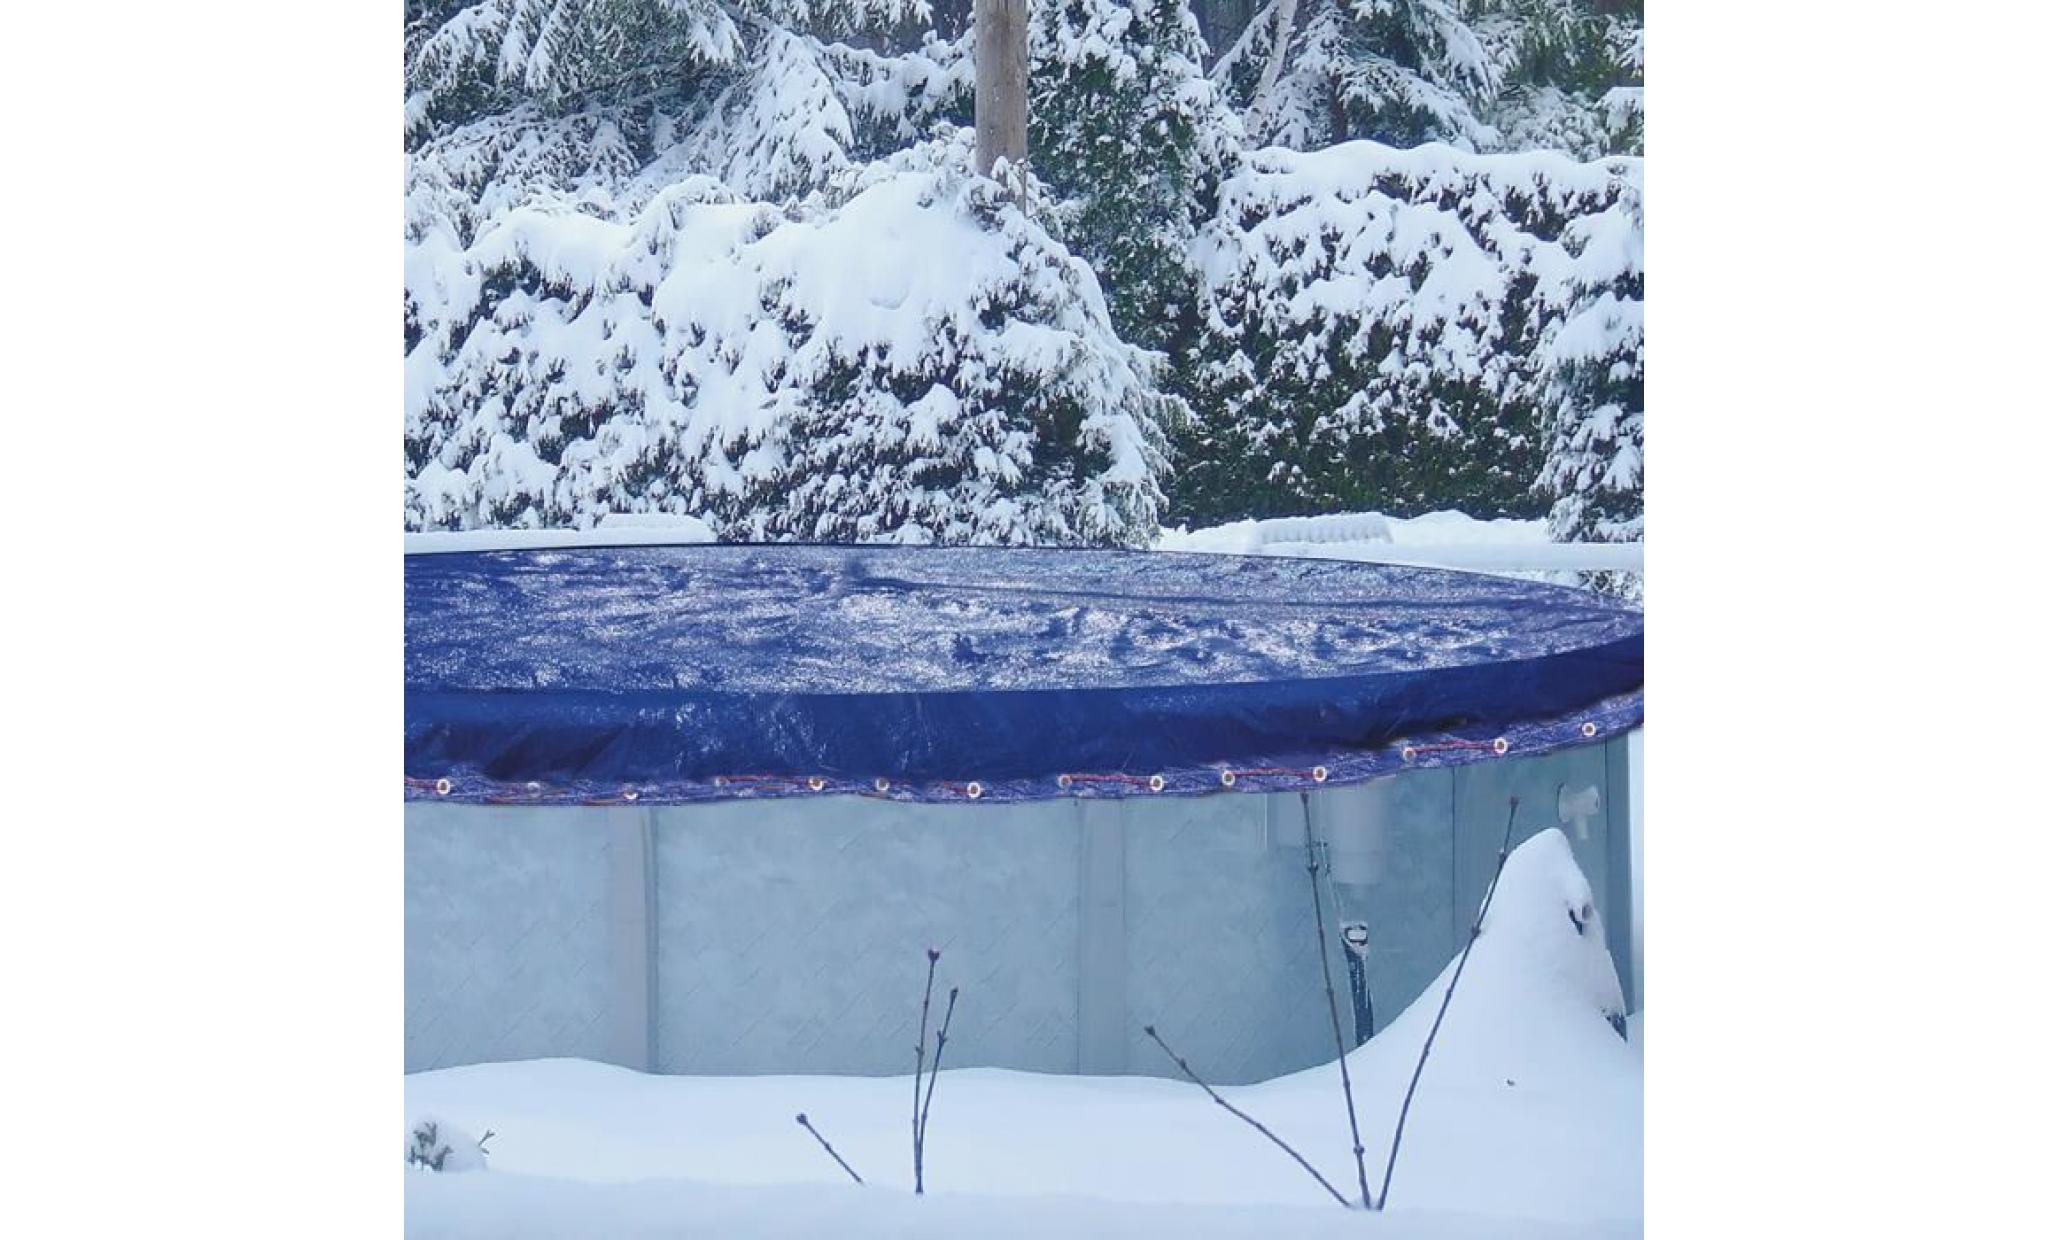 couverture hivernage piscine Ø4,6m pour bassin Ø4m